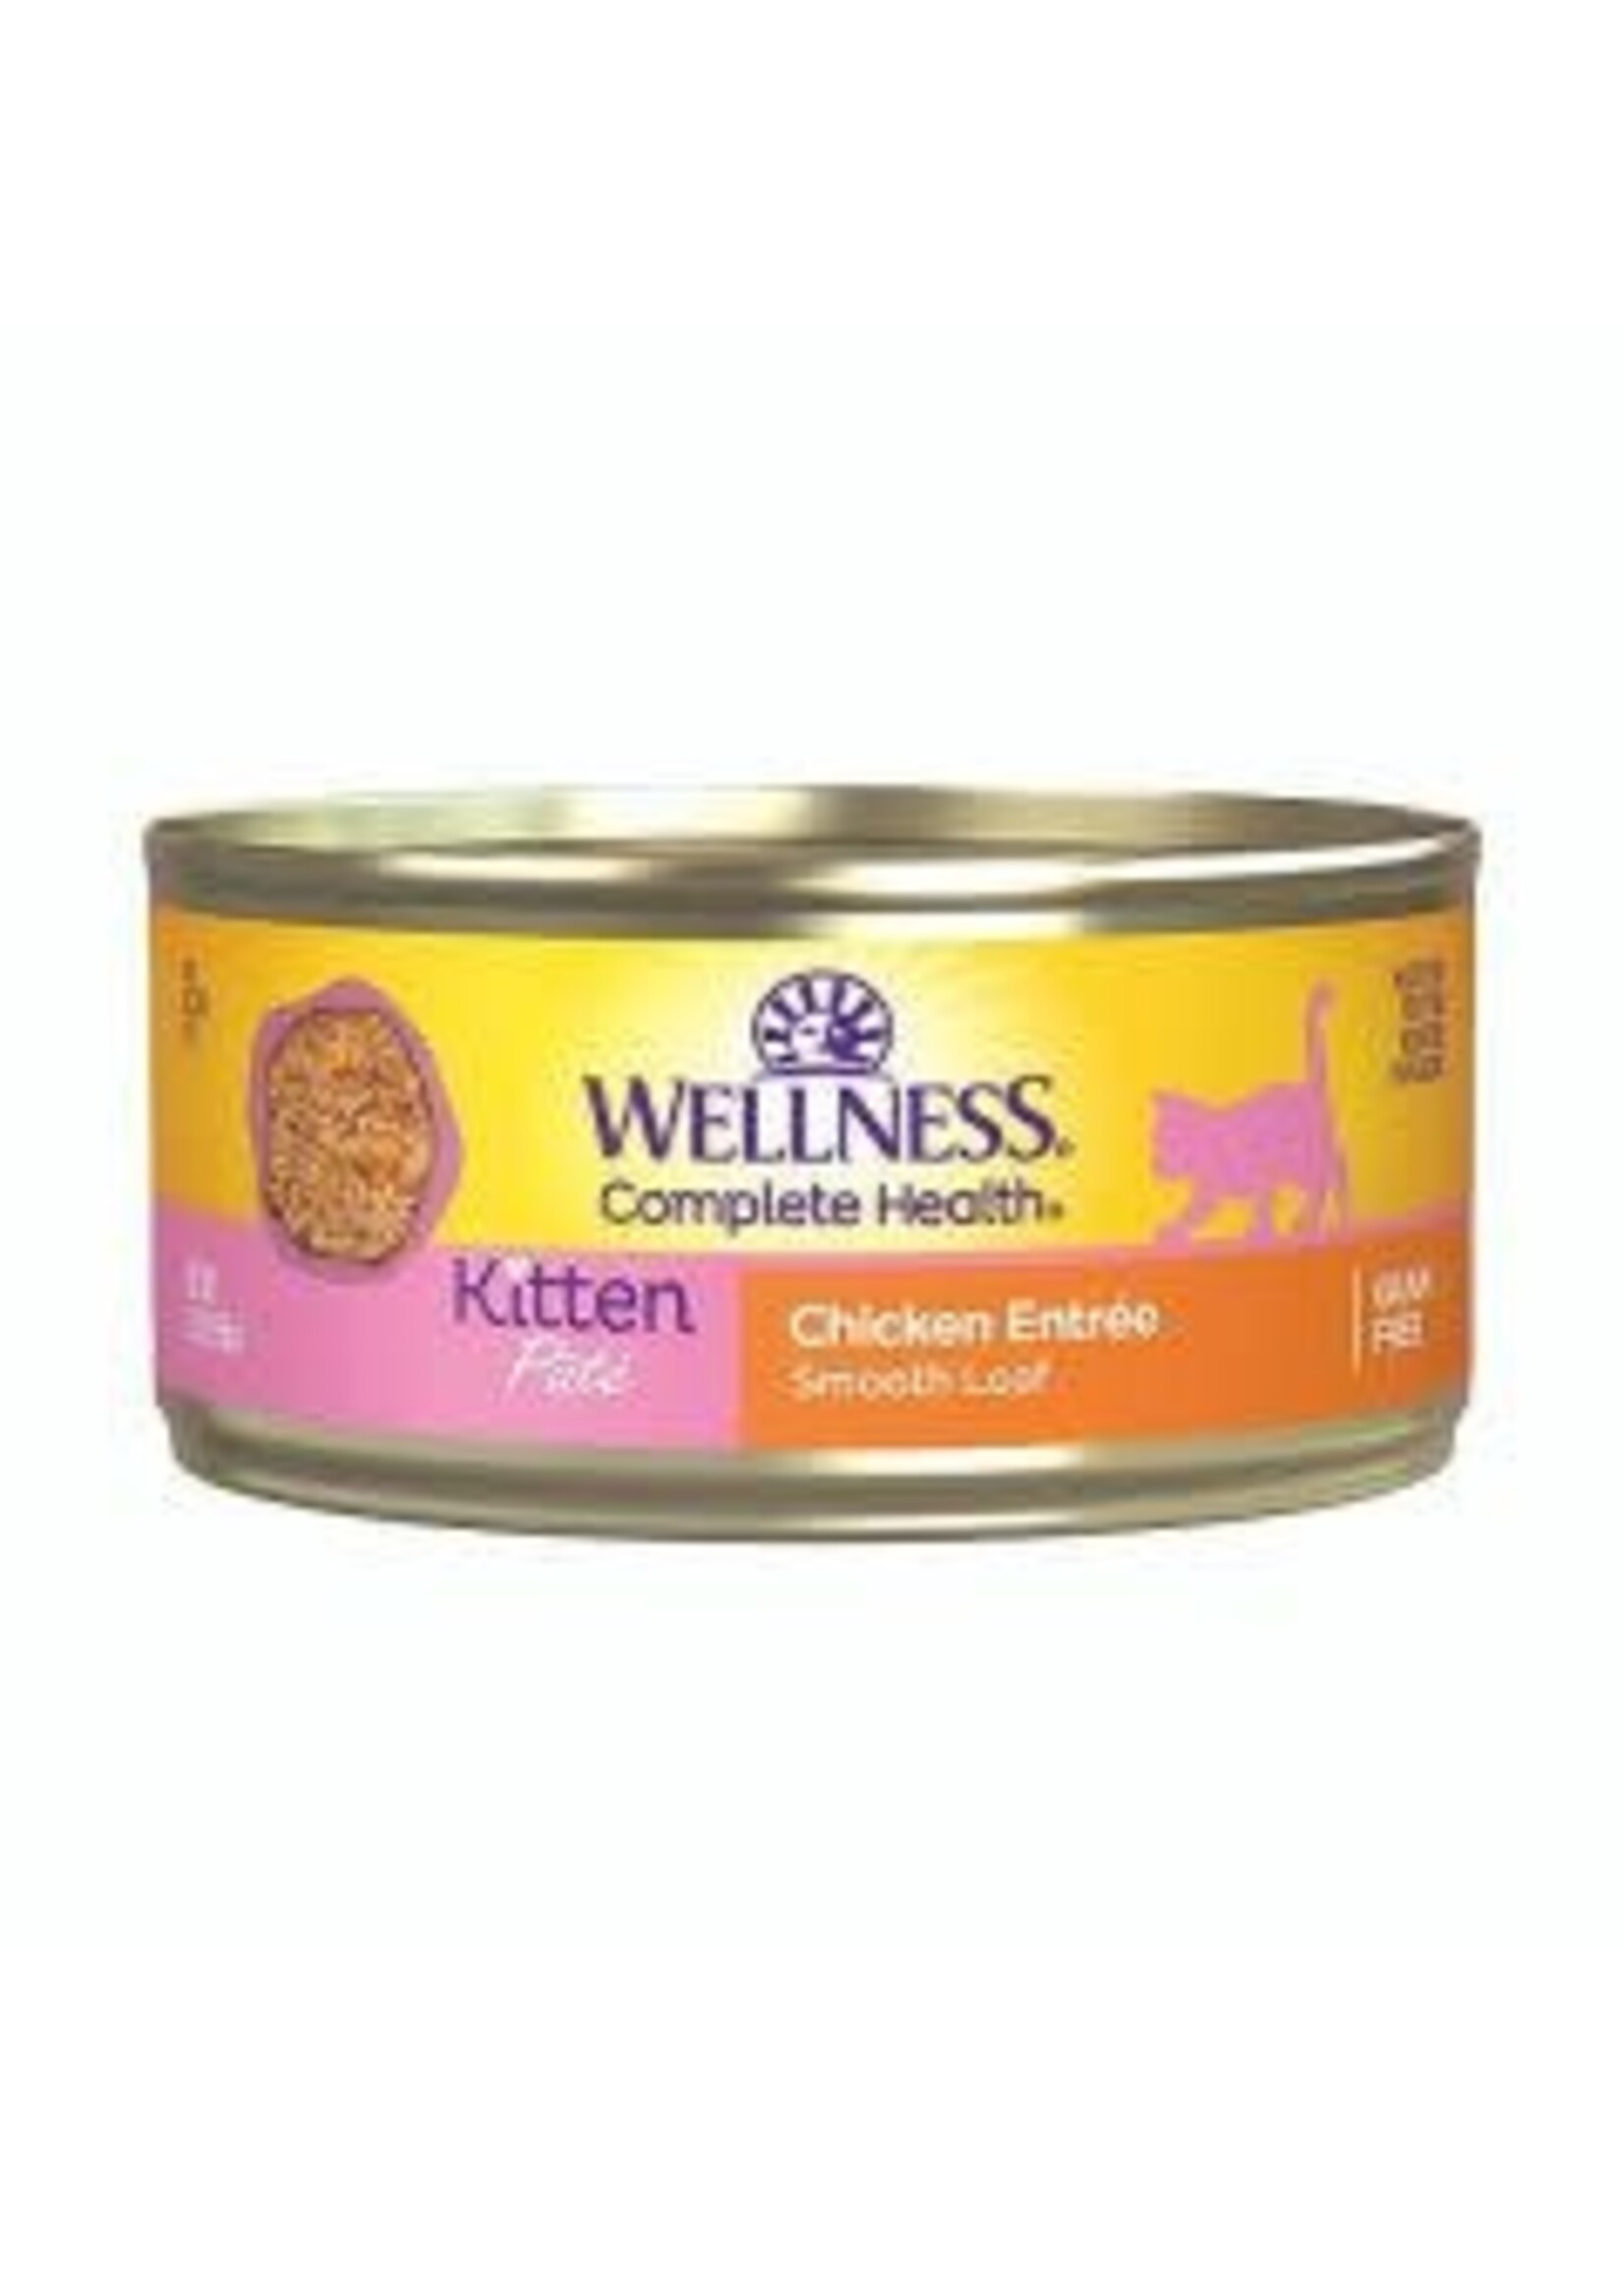 Wellness Wellness - Chicken Pate 5.5oz Kitten